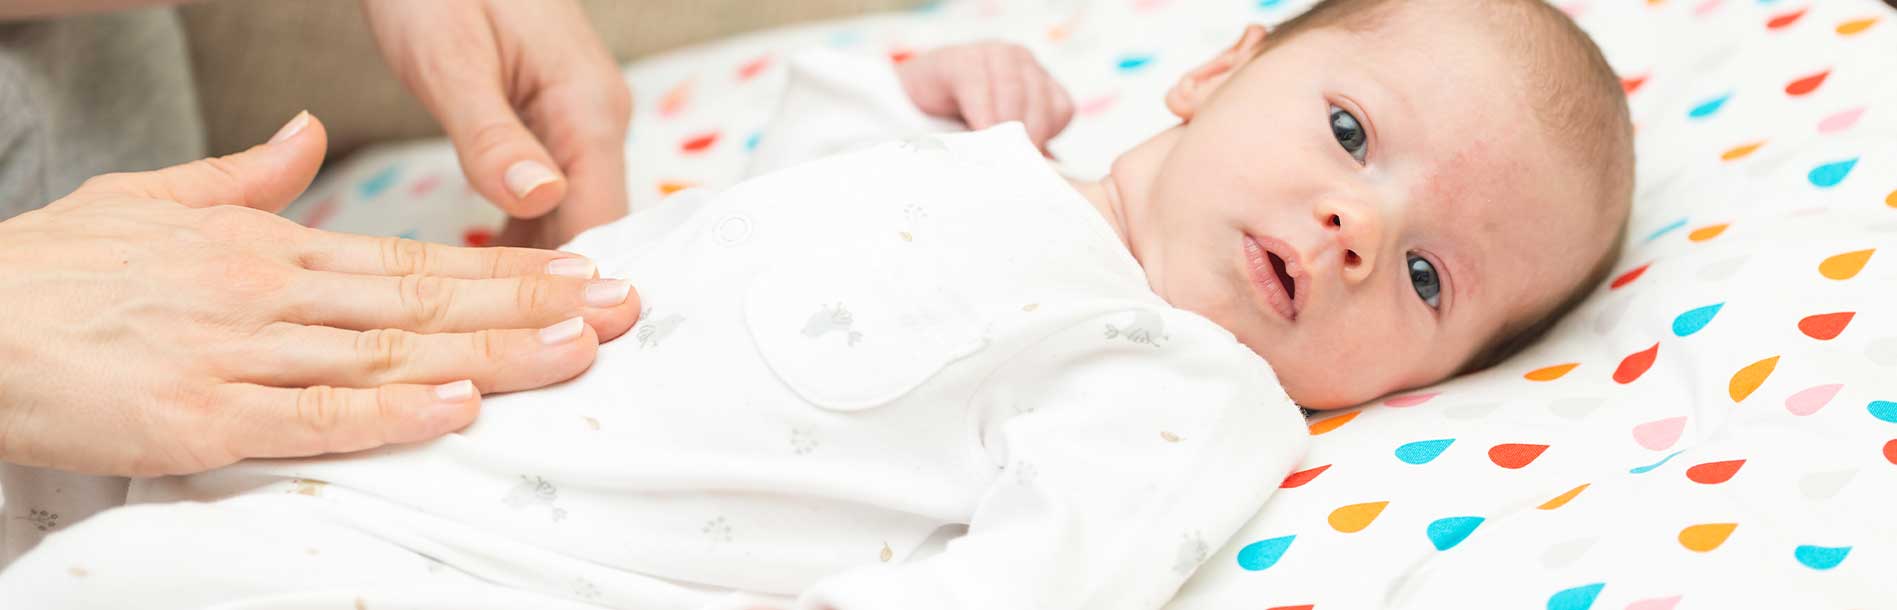 6 formas de aliviar a cólica do bebê recém-nascido